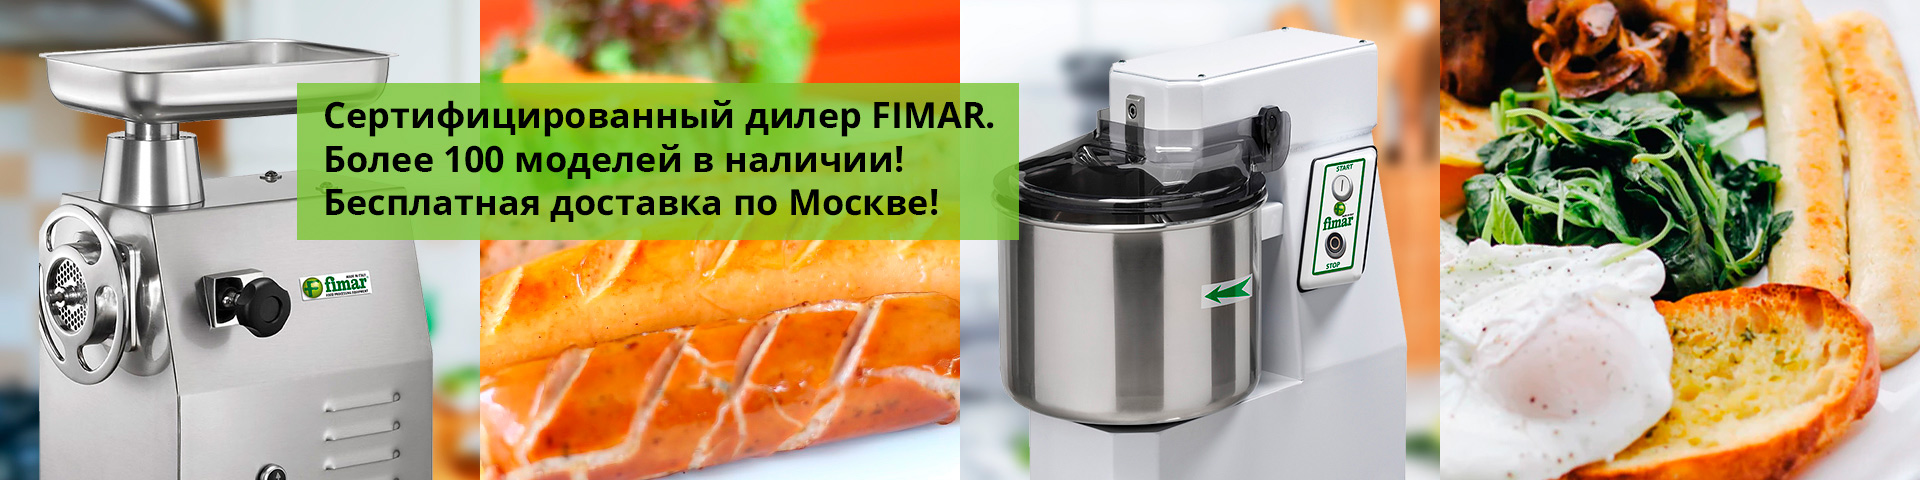 FIMAR.PRO - Официальный сайт производителя в России